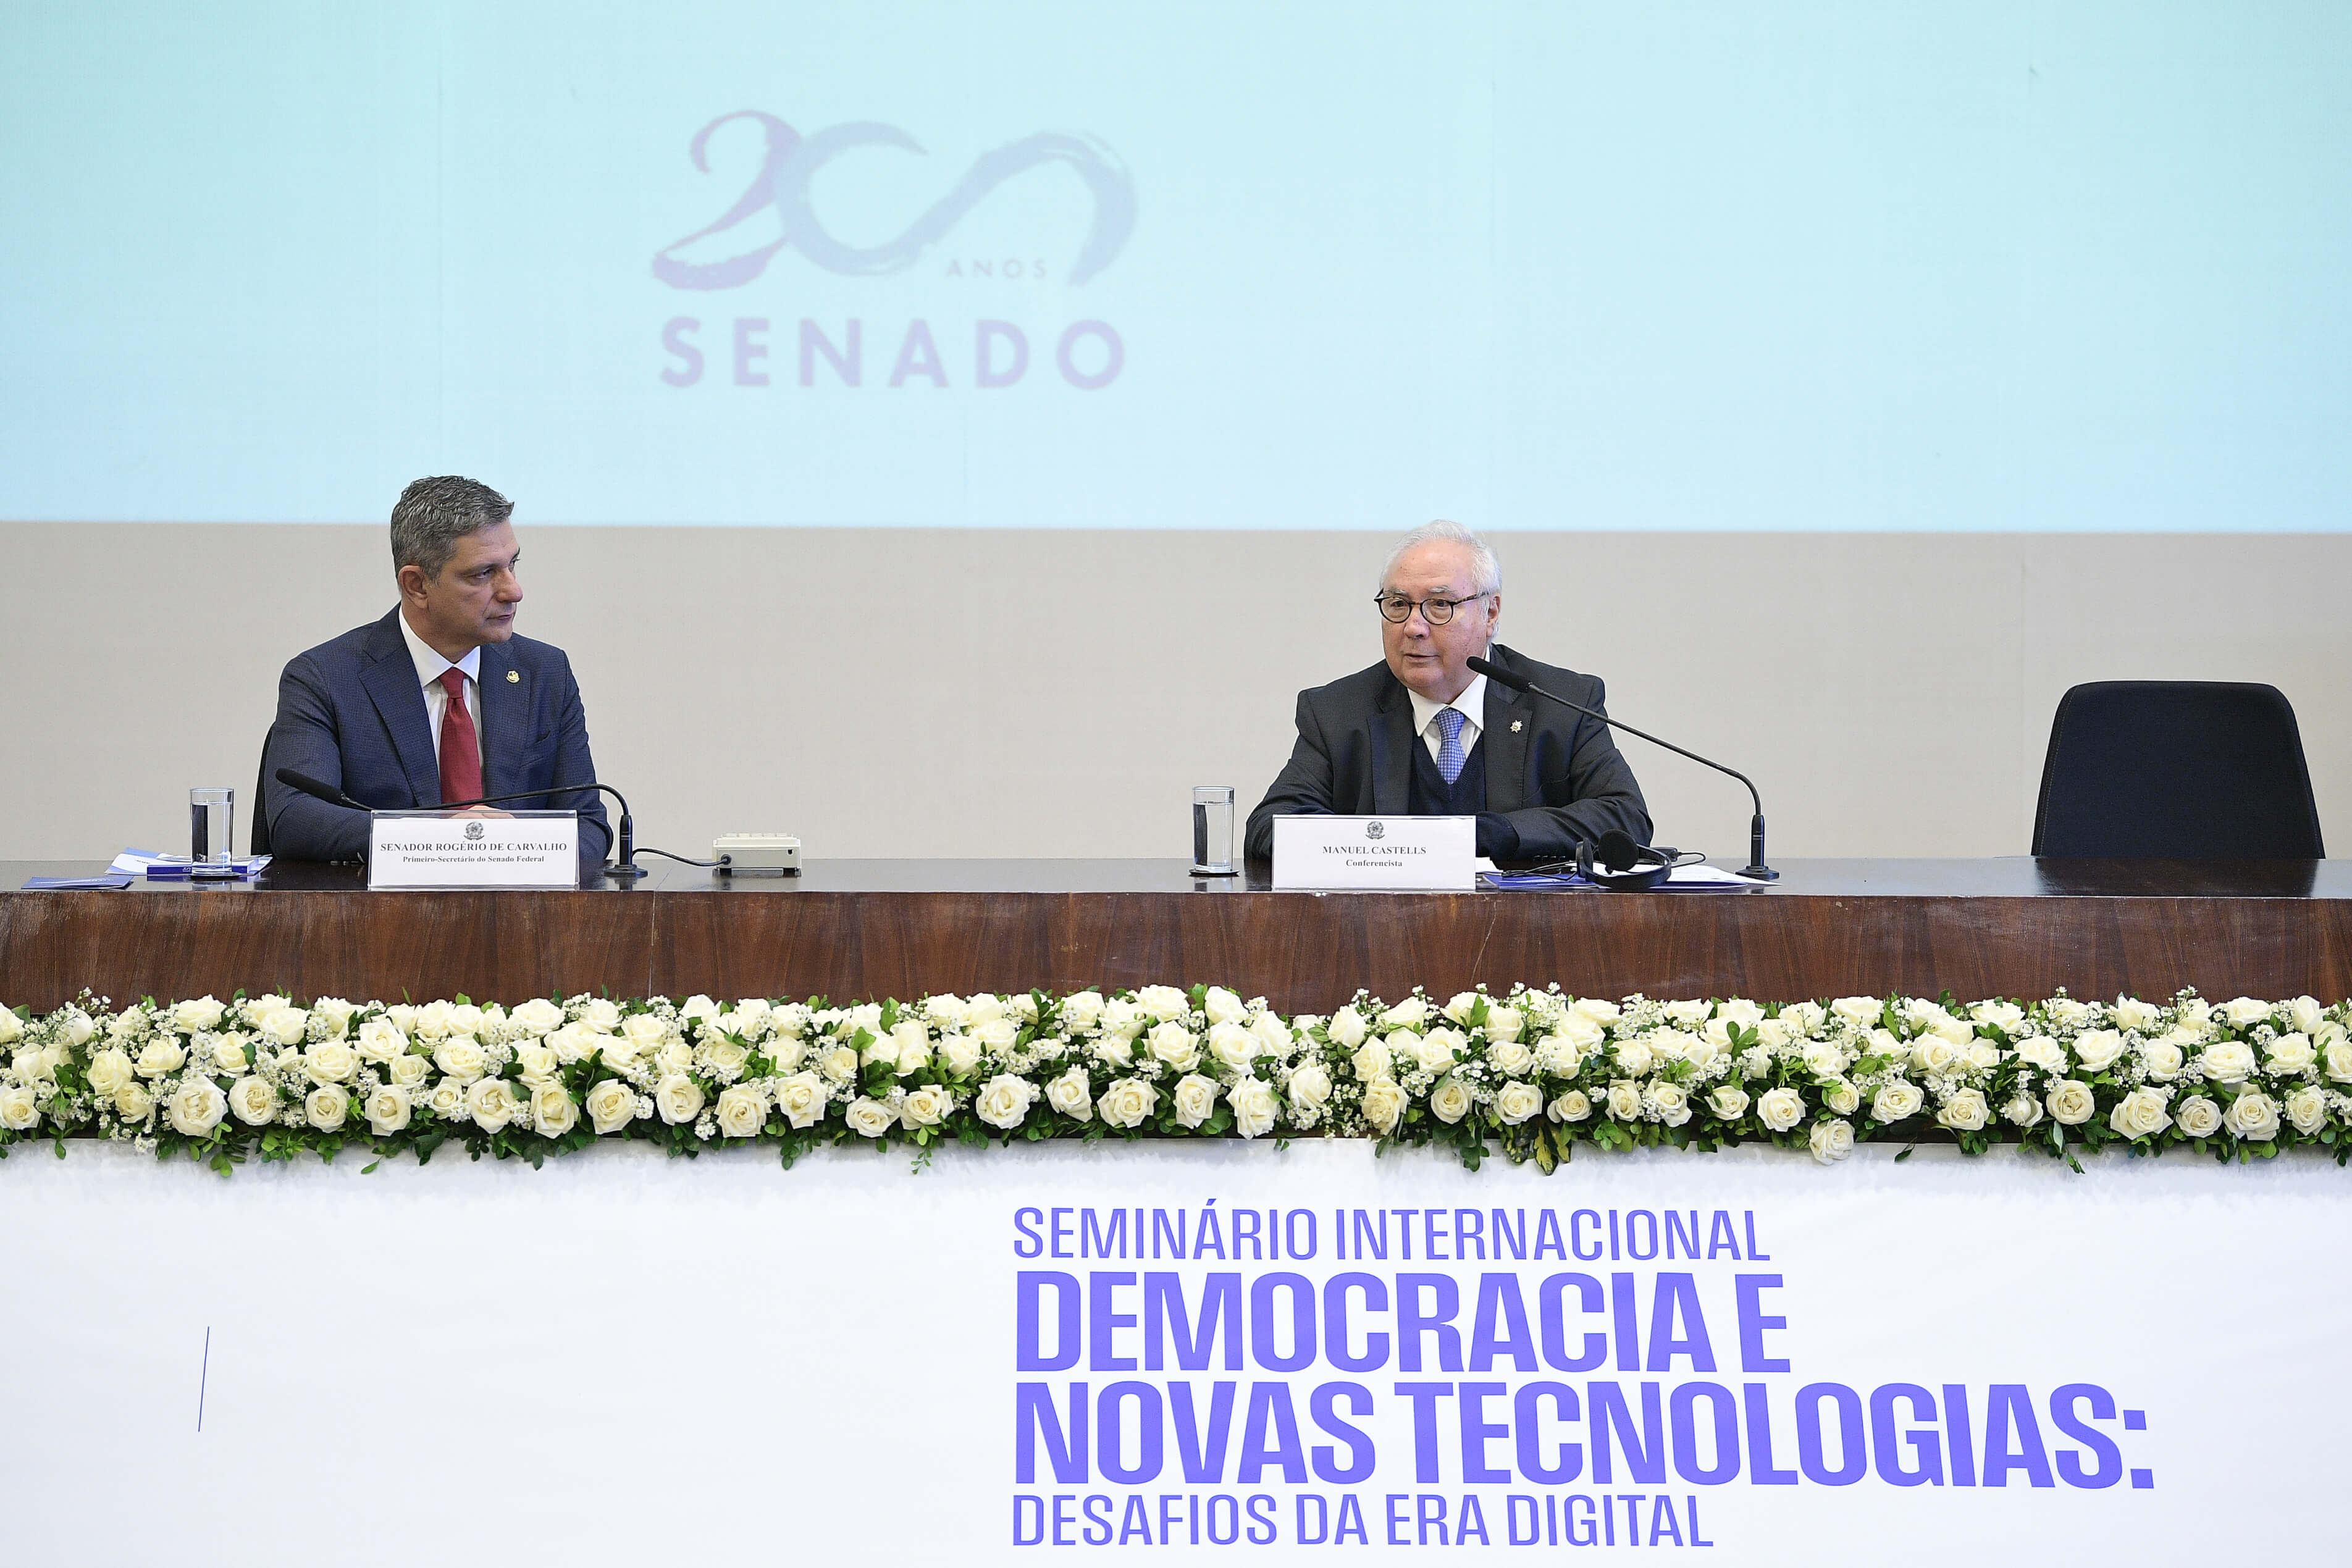 First Secretary of the Federal Senate, Senator Rogério Carvalho (PT-SE) and Spanish sociologist and professor Manuel Castells (speaker). Photo: Pedro França/Agência Senado